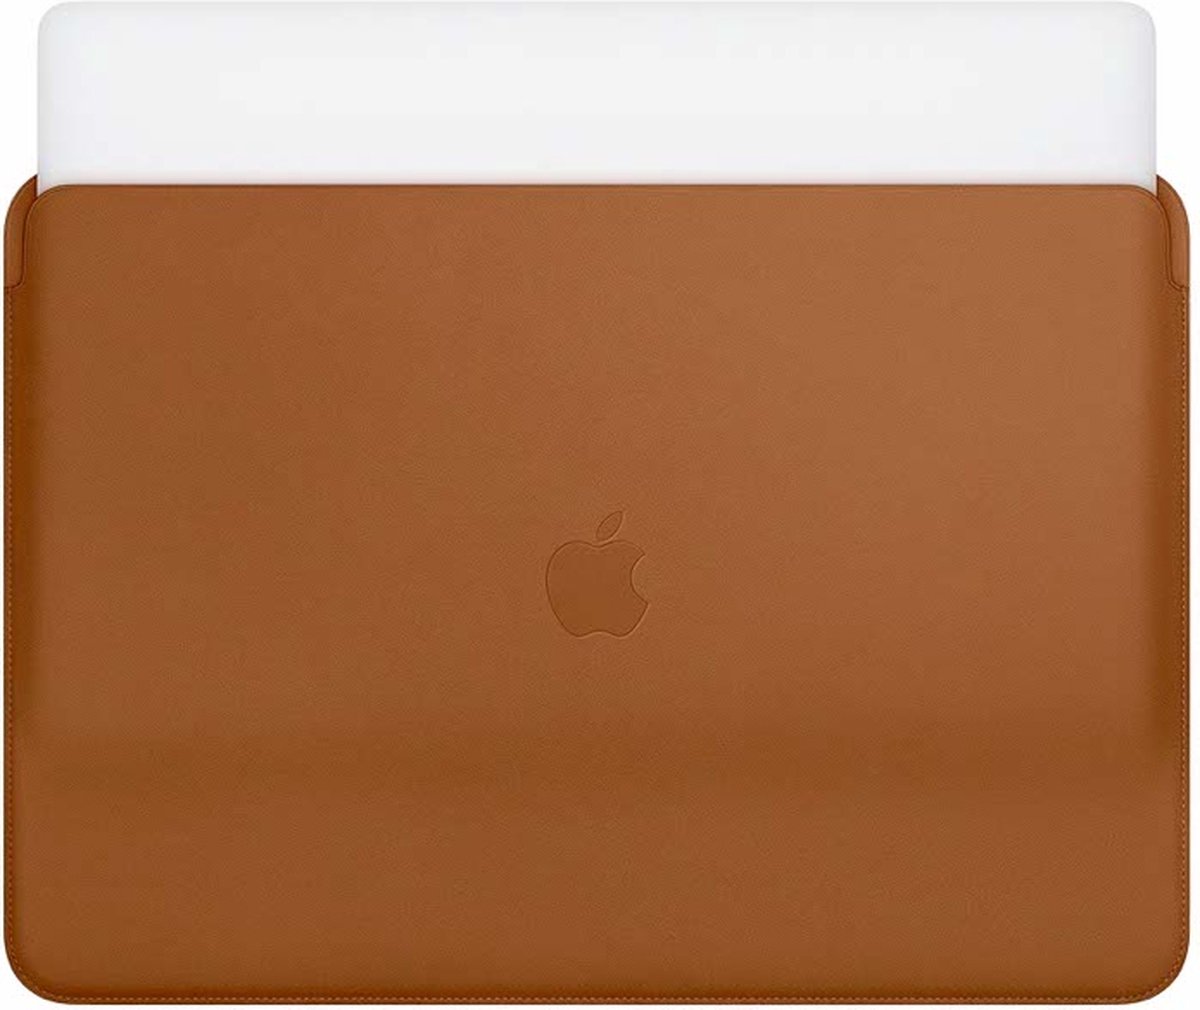 Apple echt lederen Sleeve voor de MacBook 15 inch - Macbook case - 15 inch laptop sleeve – Brown